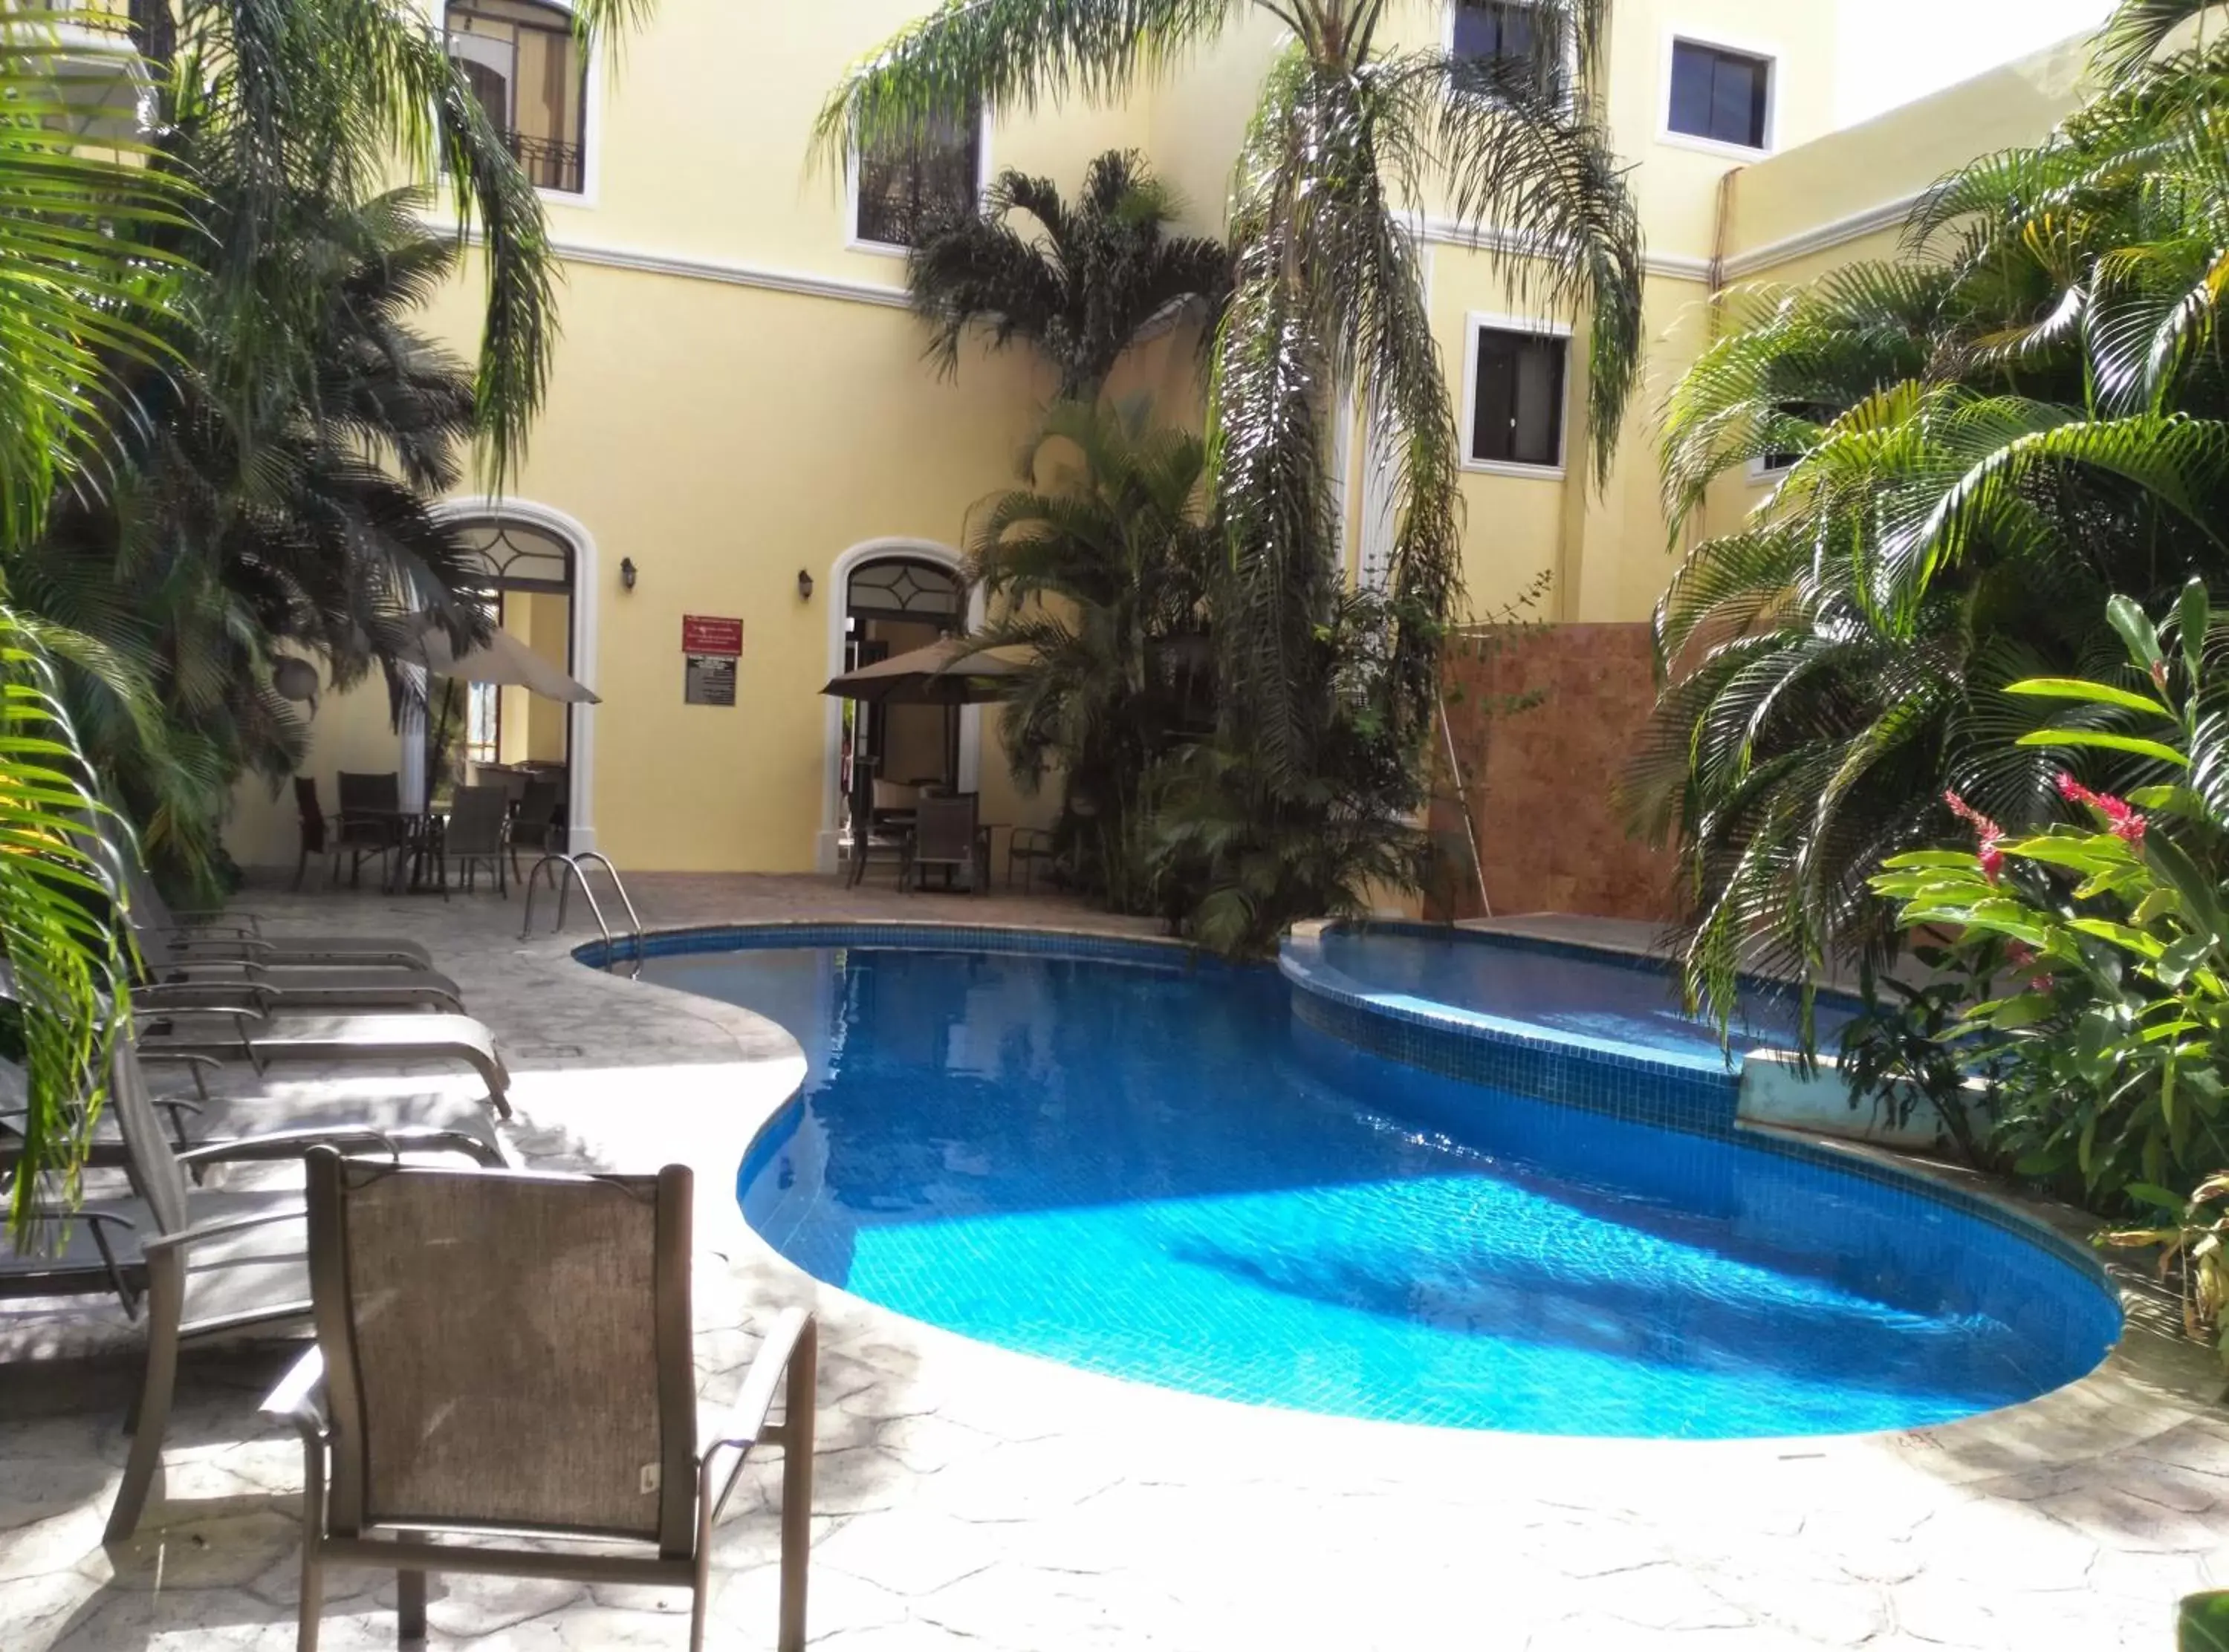 Property building, Swimming Pool in Gran Real Yucatan